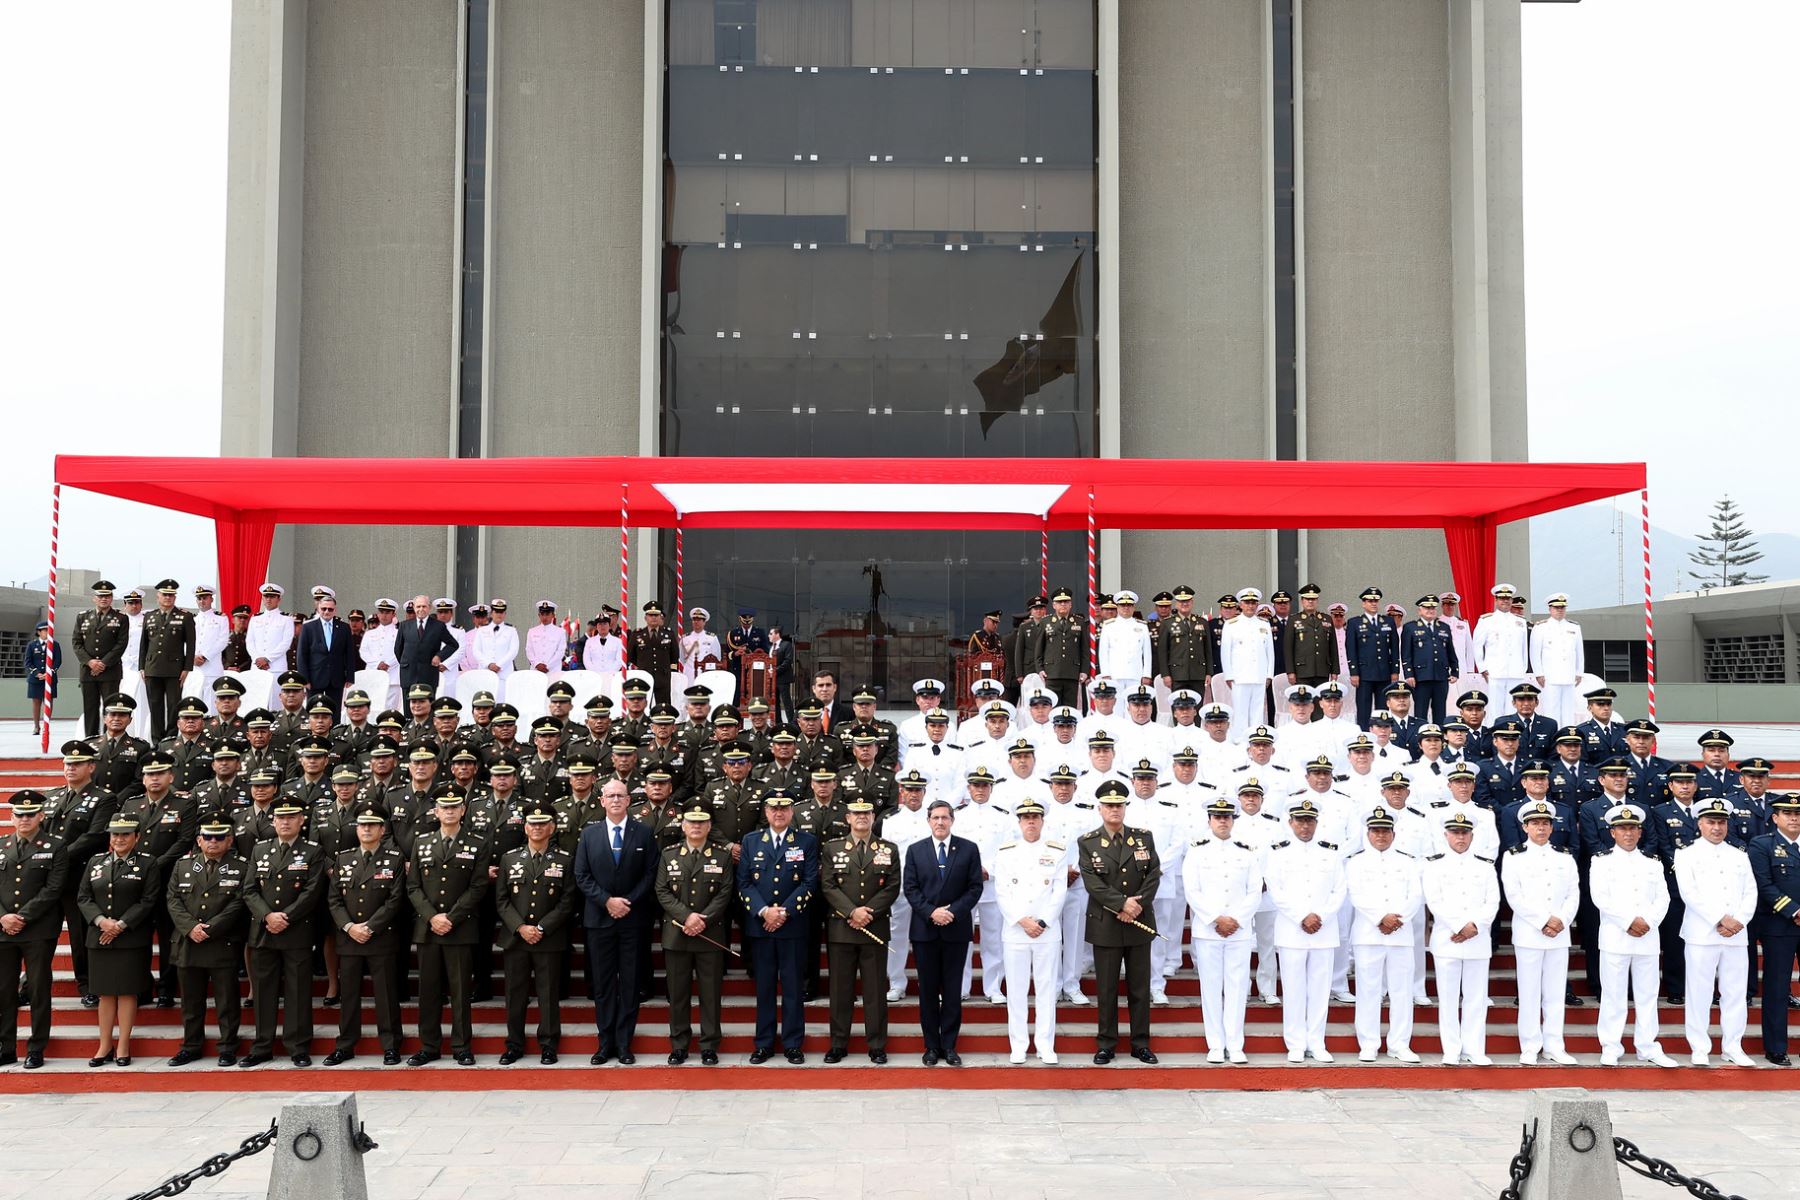 En el Cuartel General del Ejercito del Perú, el ministro Jorge Chávez Cresta preside la Ceremonia de Imposición del Cintillo de Operaciones de Paz al Personal Militar Desplegado en Misiones de Paz en el marco del Día Internacional del Personal de Paz de las Naciones Unidas.
Foto: ANDINA/Mindef